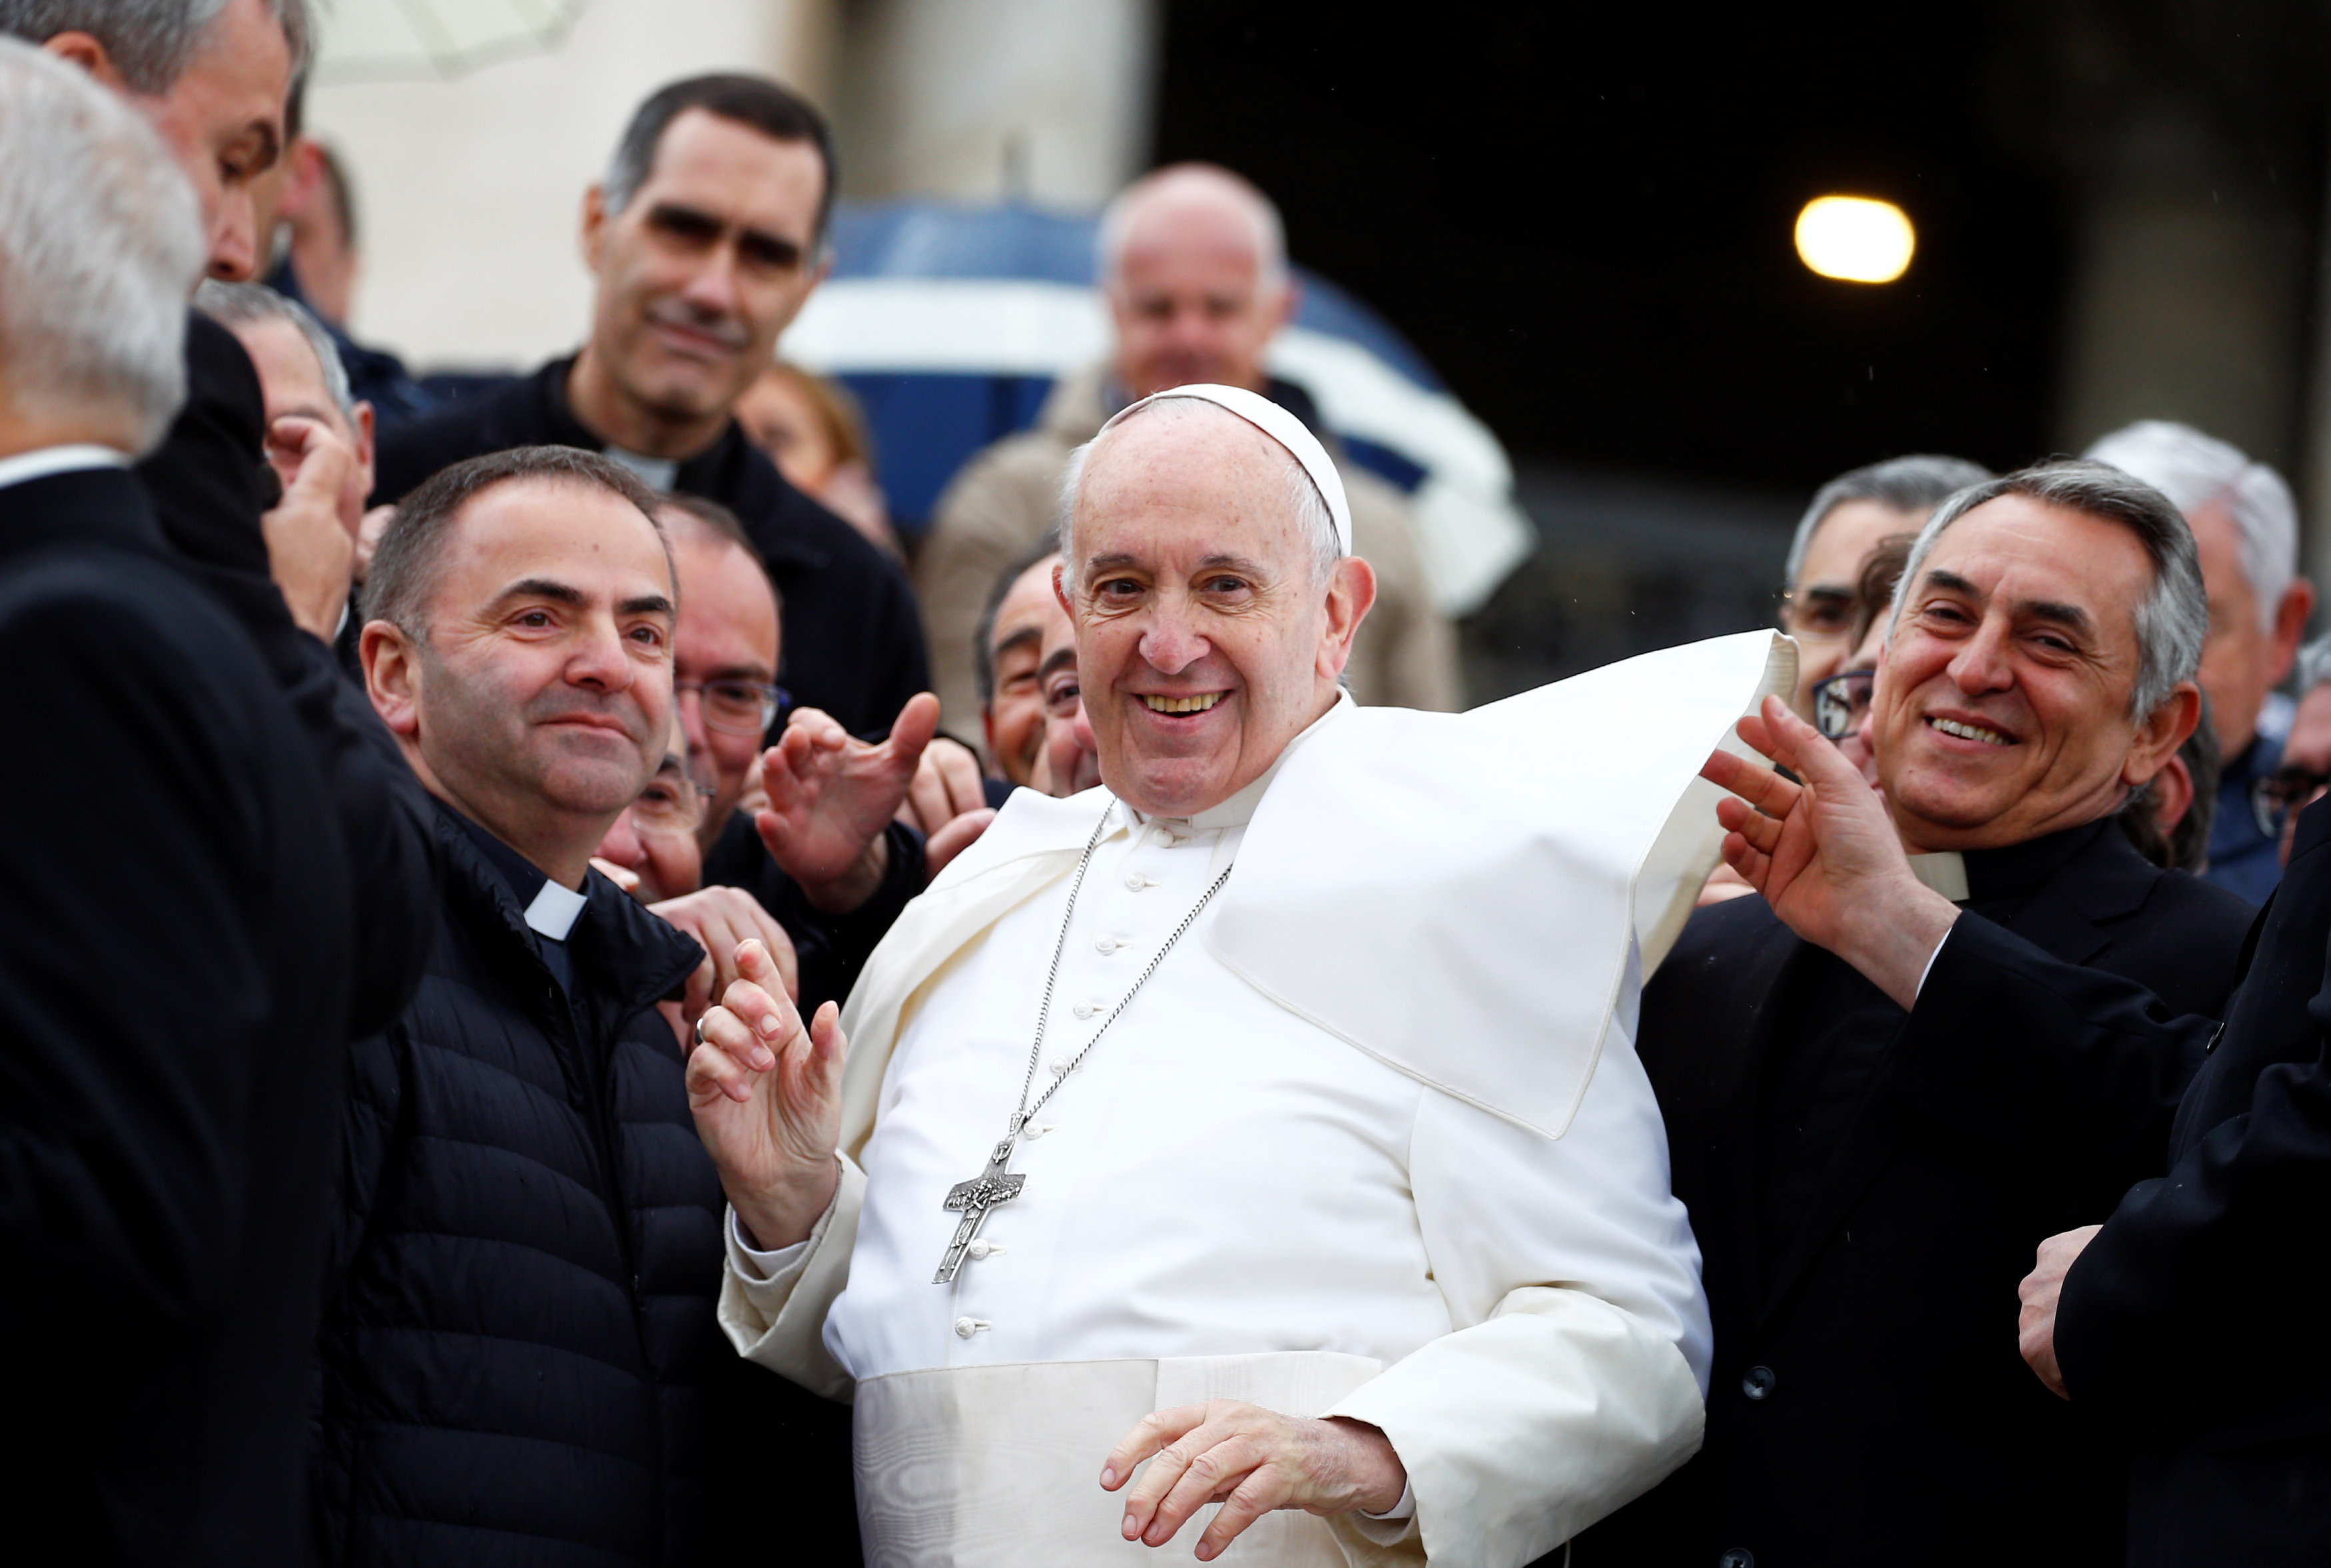 El papa Francisco lleva en su papamóvil durante la audiencia a ocho niños refugiados